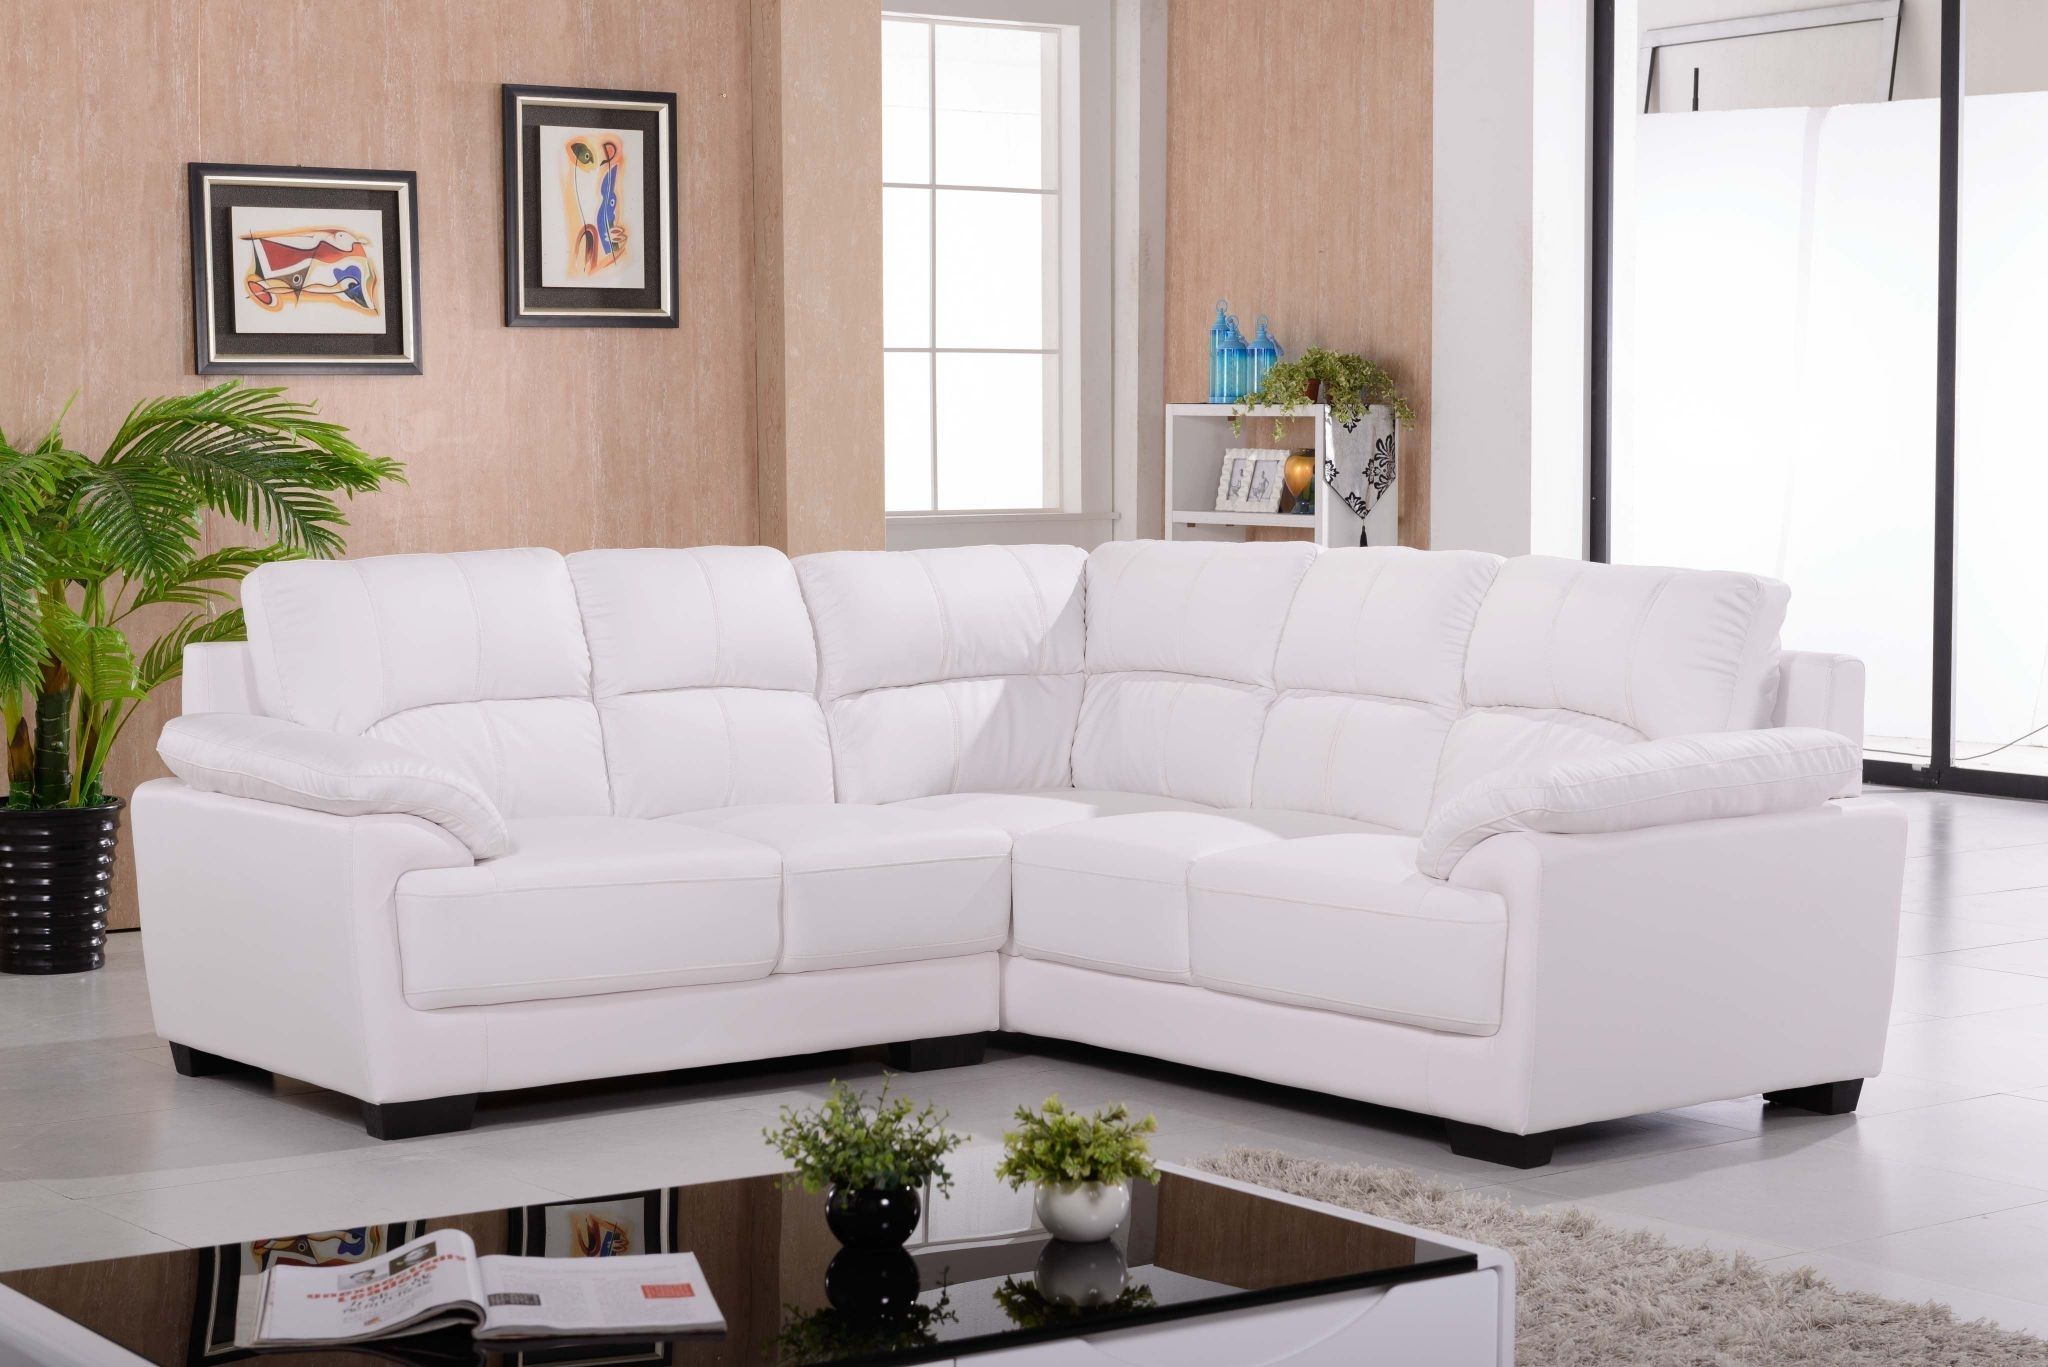 soft white leather sofa